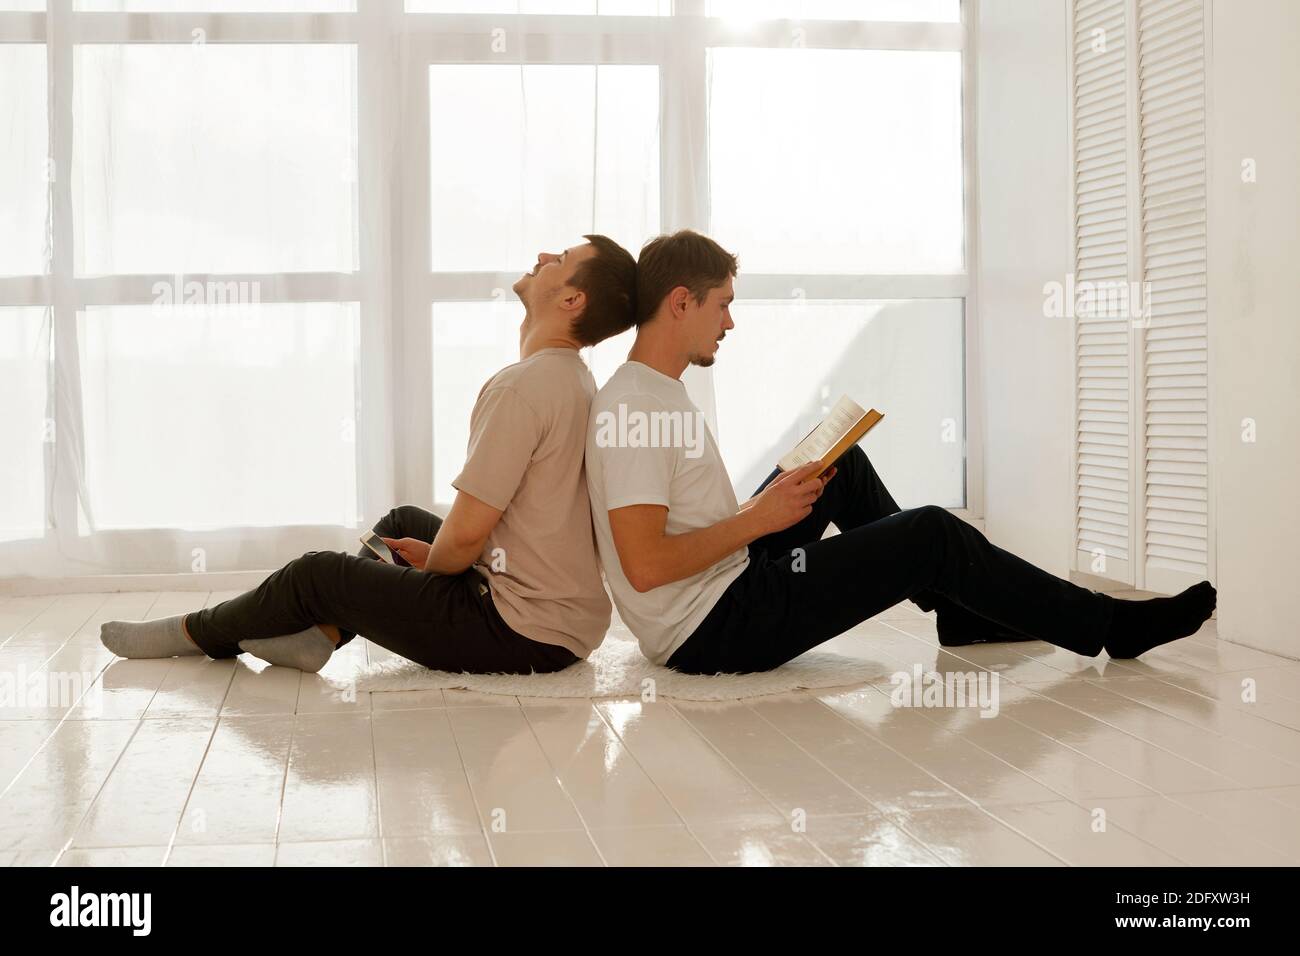 Un gentil lit un livre et son ami l'écoute et regarde dans un smartphone. Des hommes gais passent du temps à la maison assis sur le plancher du ho Banque D'Images